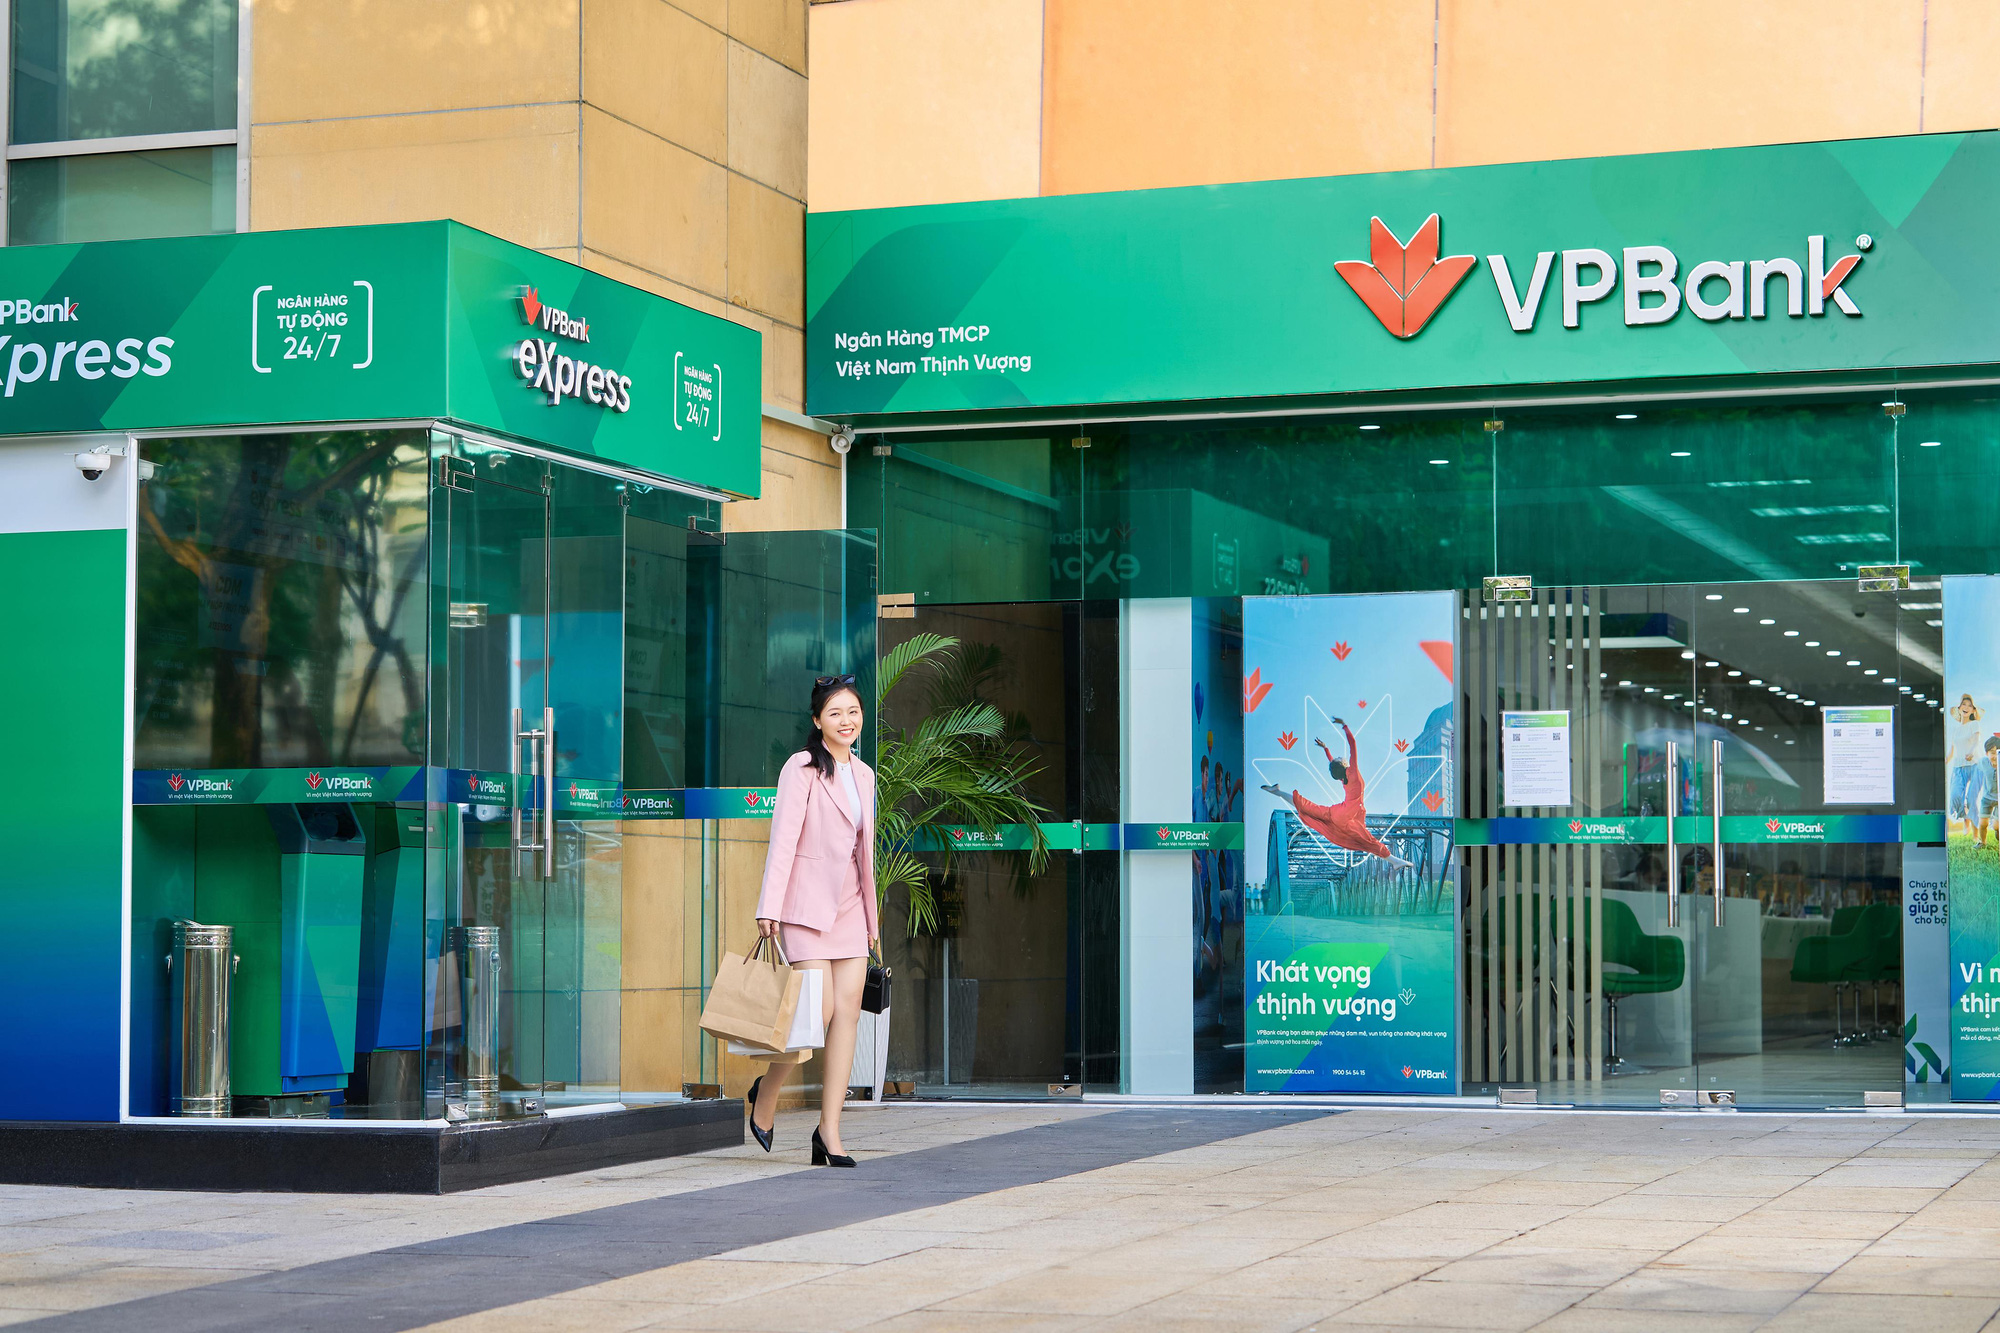 Thủ tục đăng ký VPBank Visa Signature Travel Miles nhanh chóng